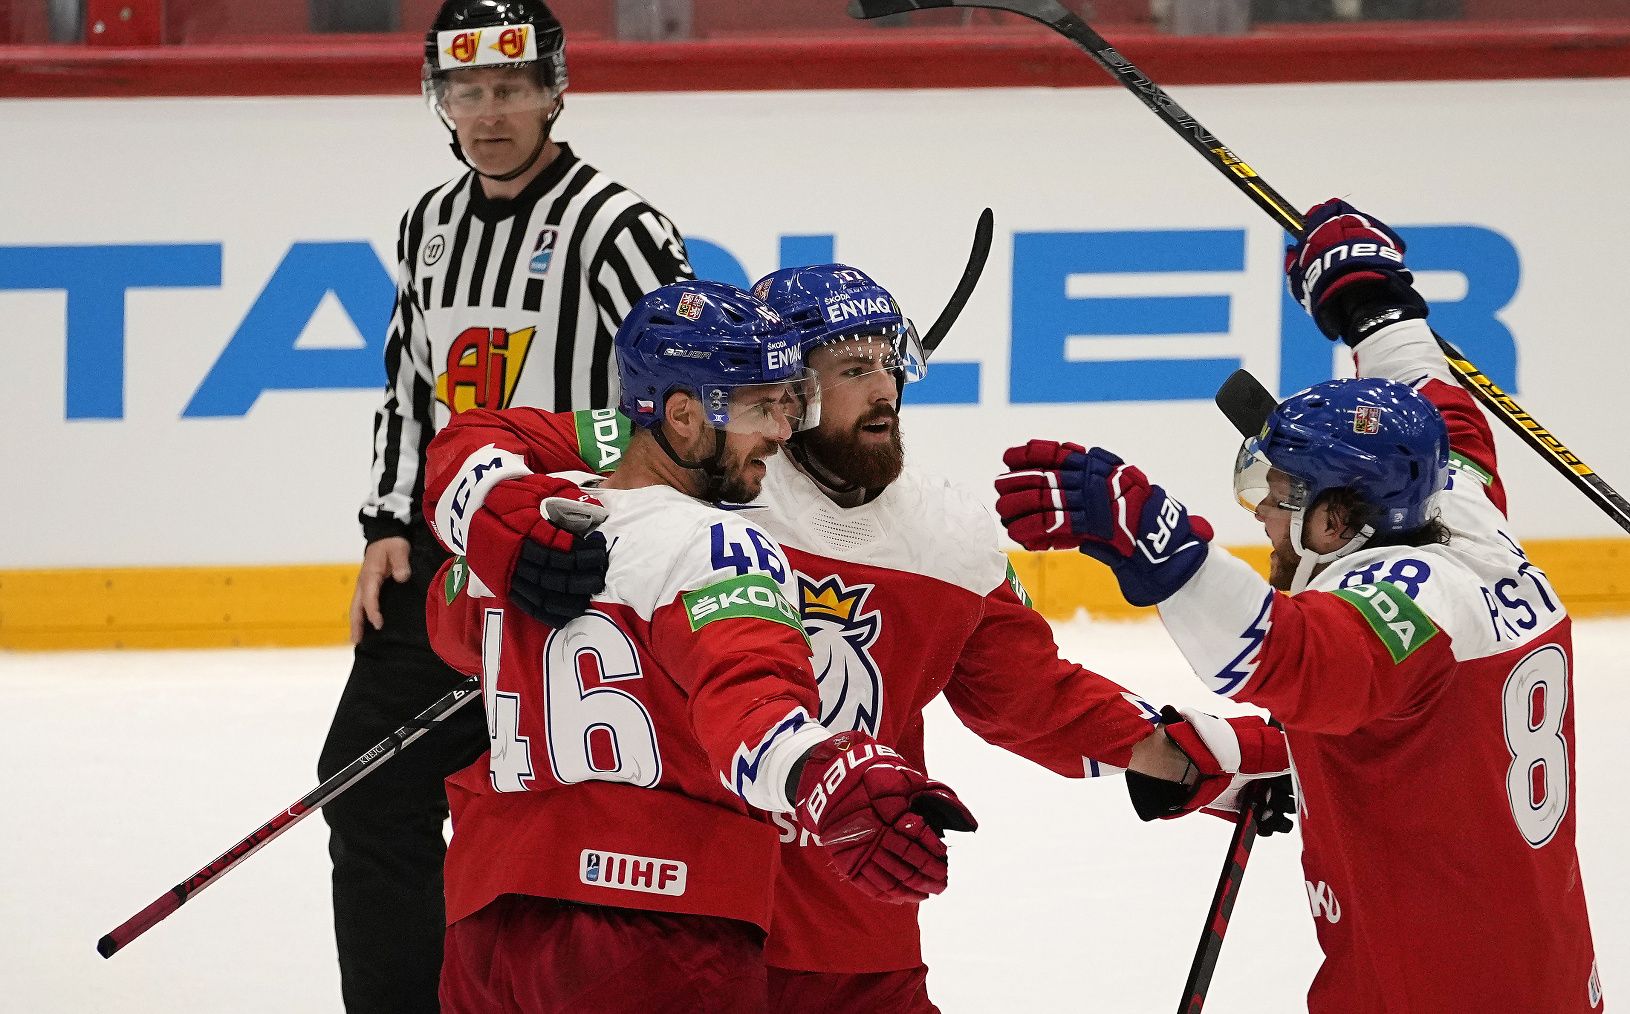 Českí hokejisti sa radujú